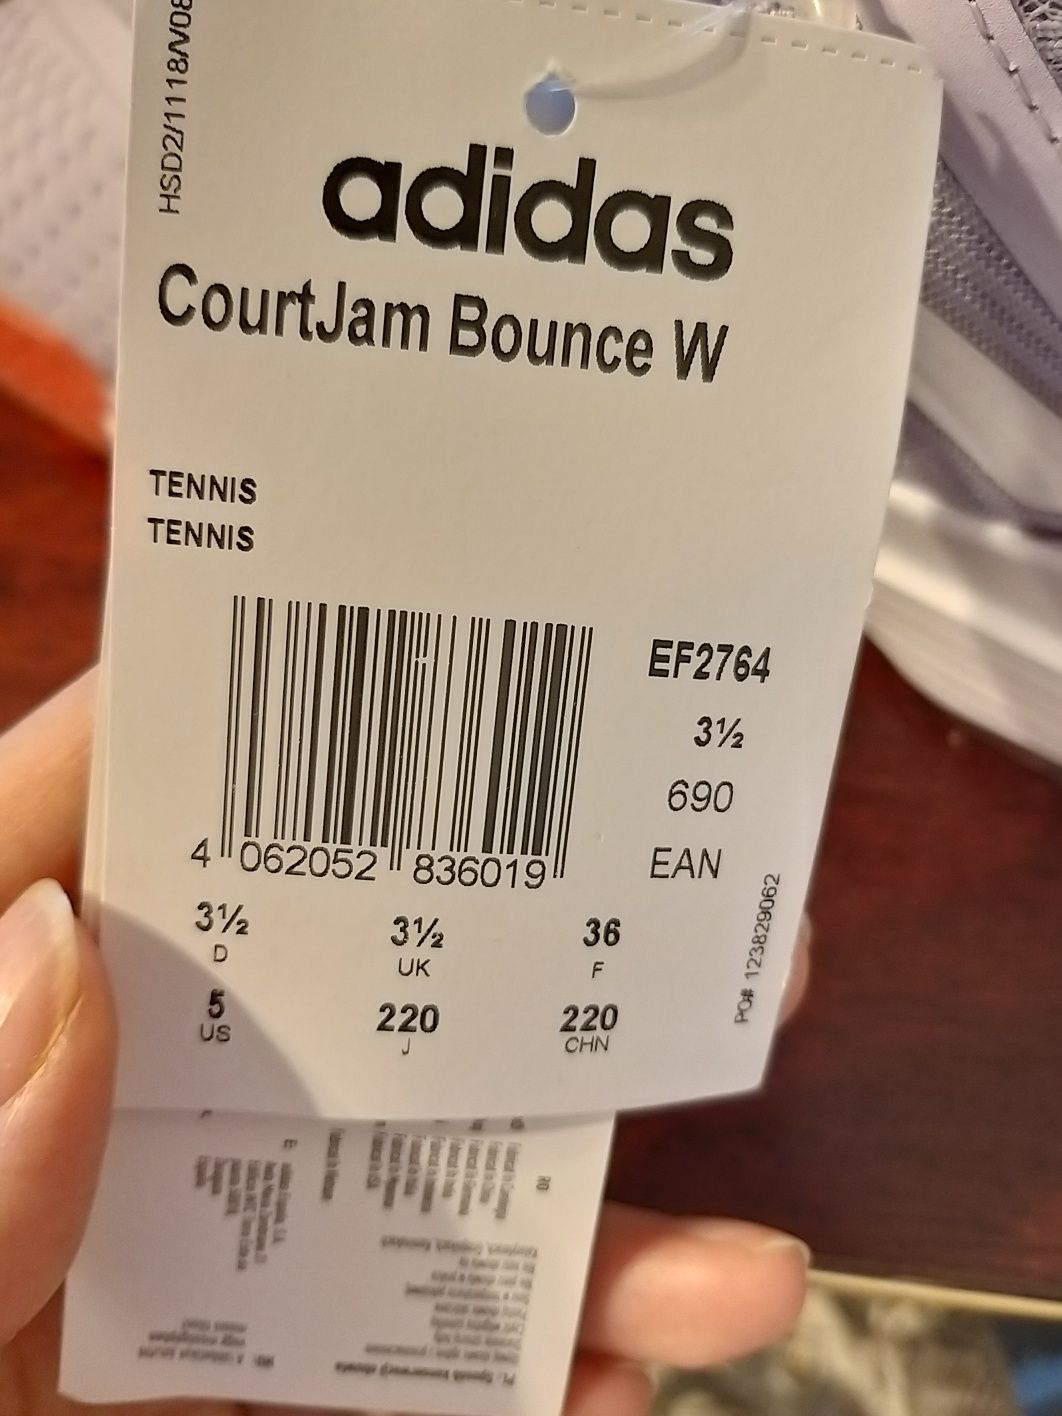 Оригинальные кроссовки Adidas